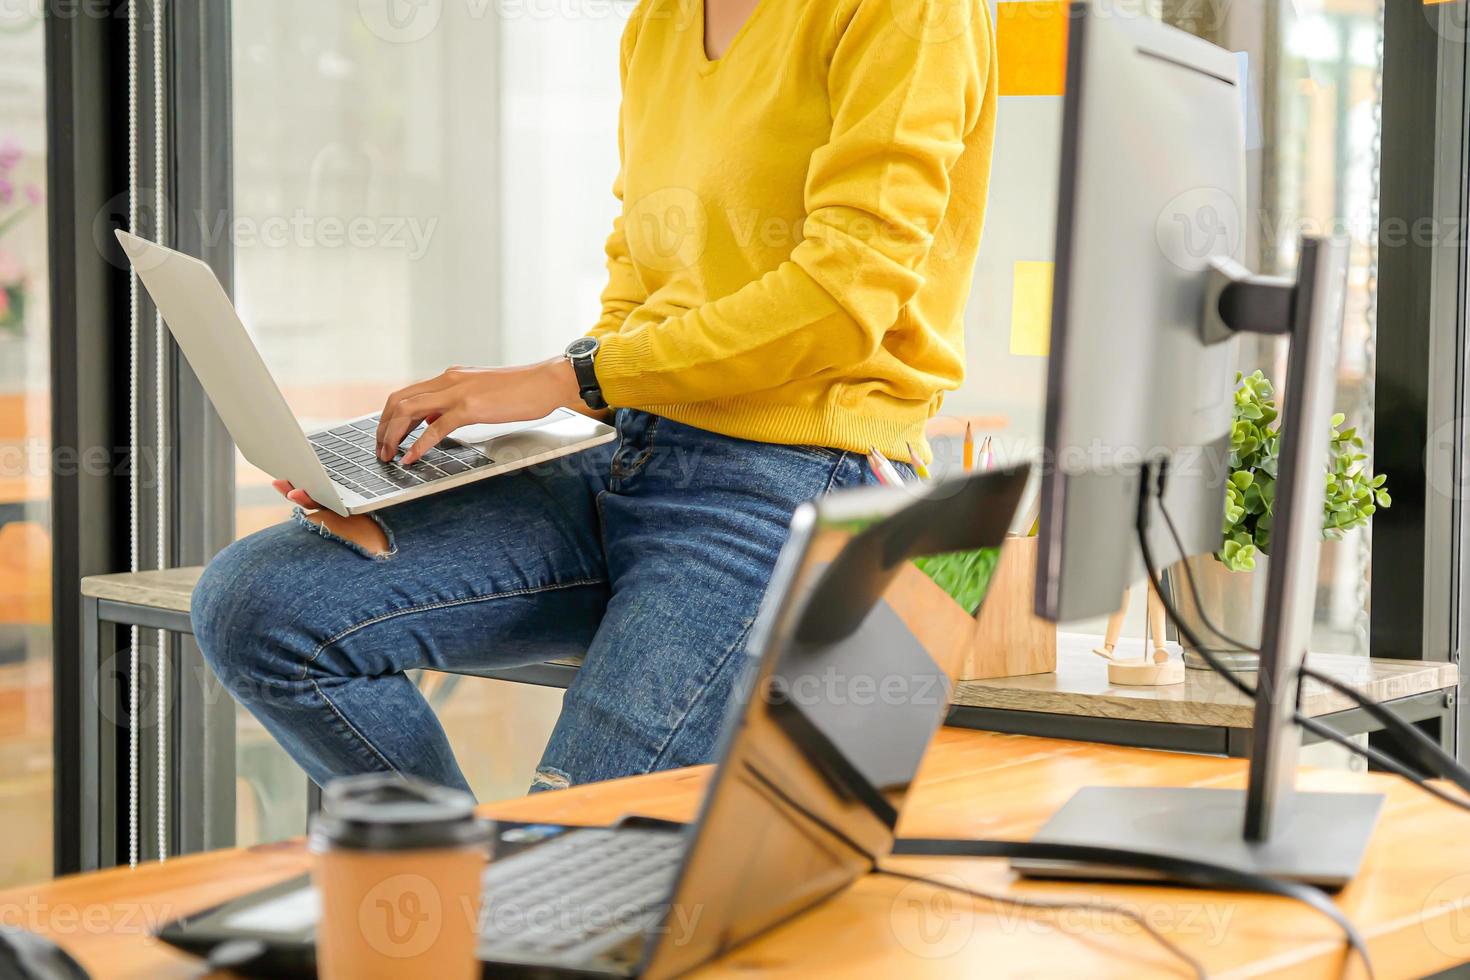 Programmierer verwenden Laptops, um das System im Büro zu testen. Sie legte den Laptop auf ihr Bein. foto